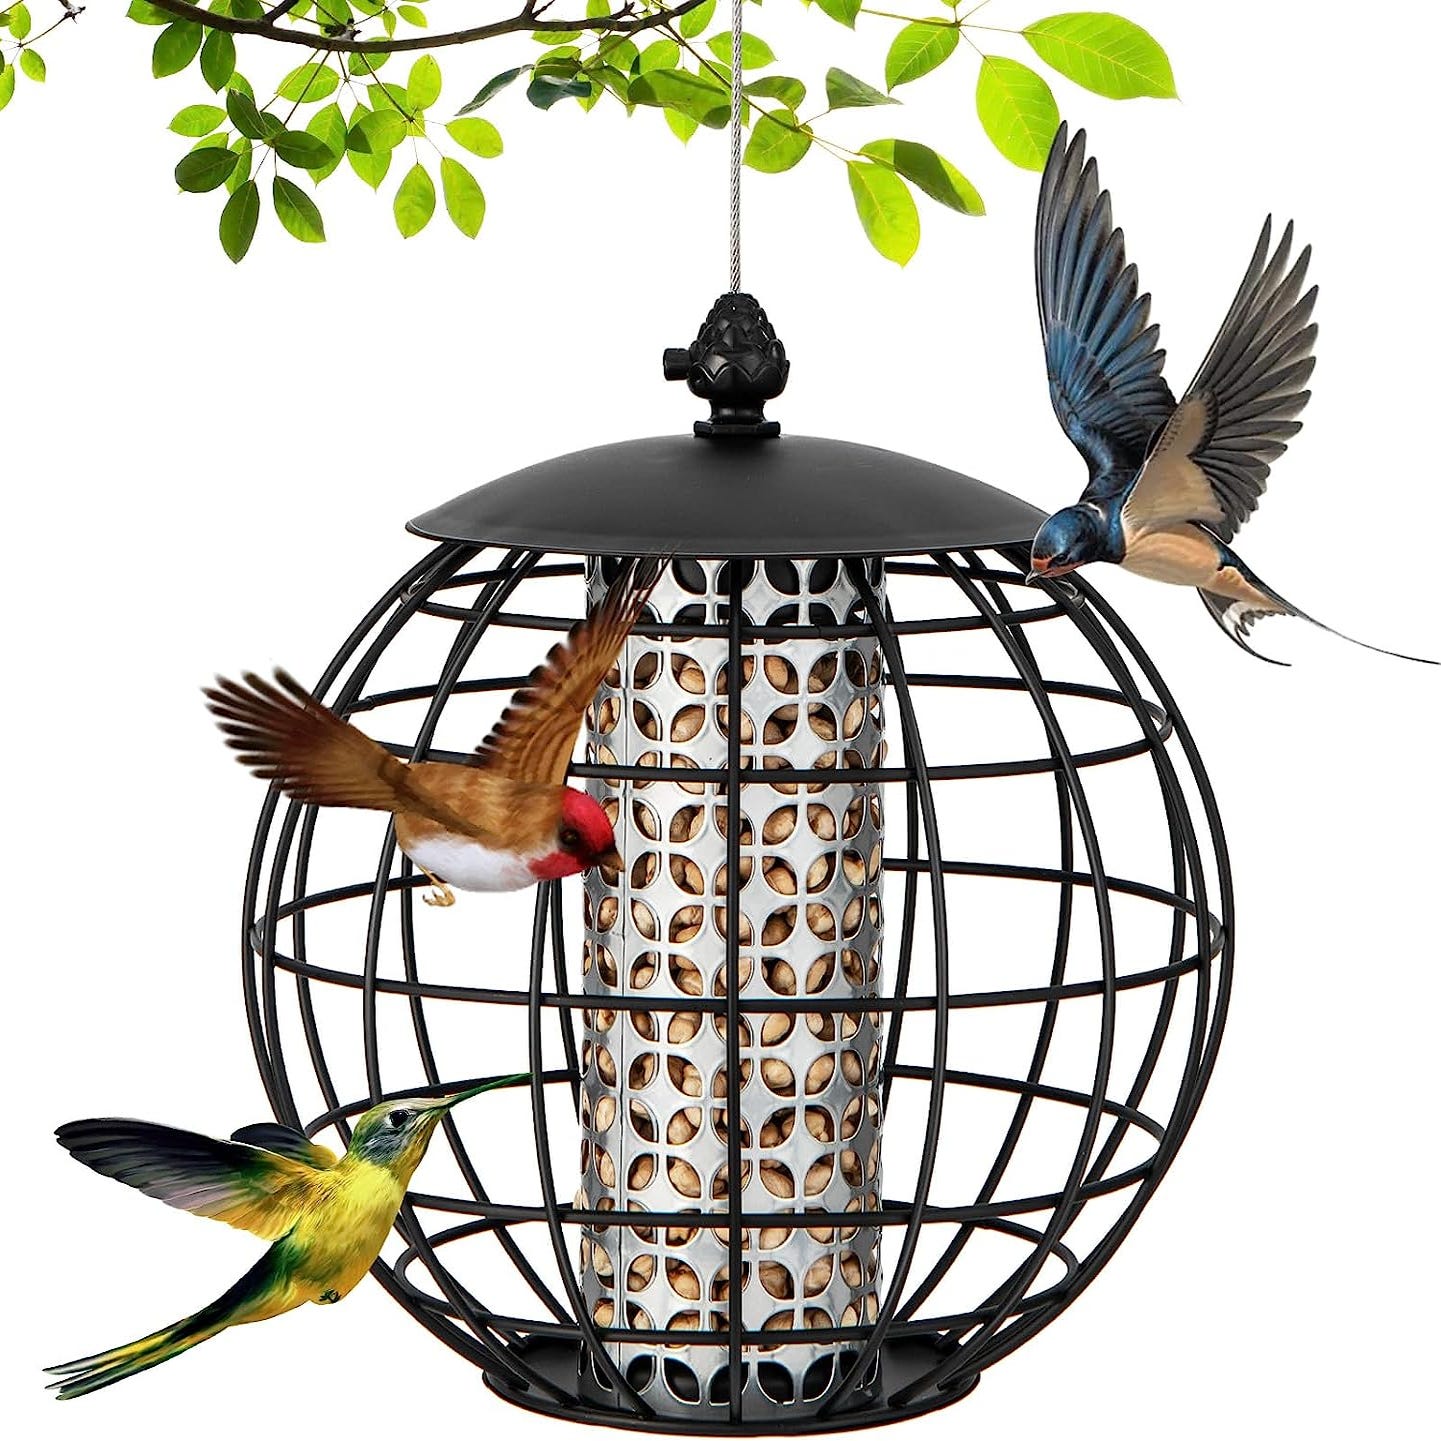 Mangeoire amovible pour colibris, bac à eau pour oiseaux sauvages